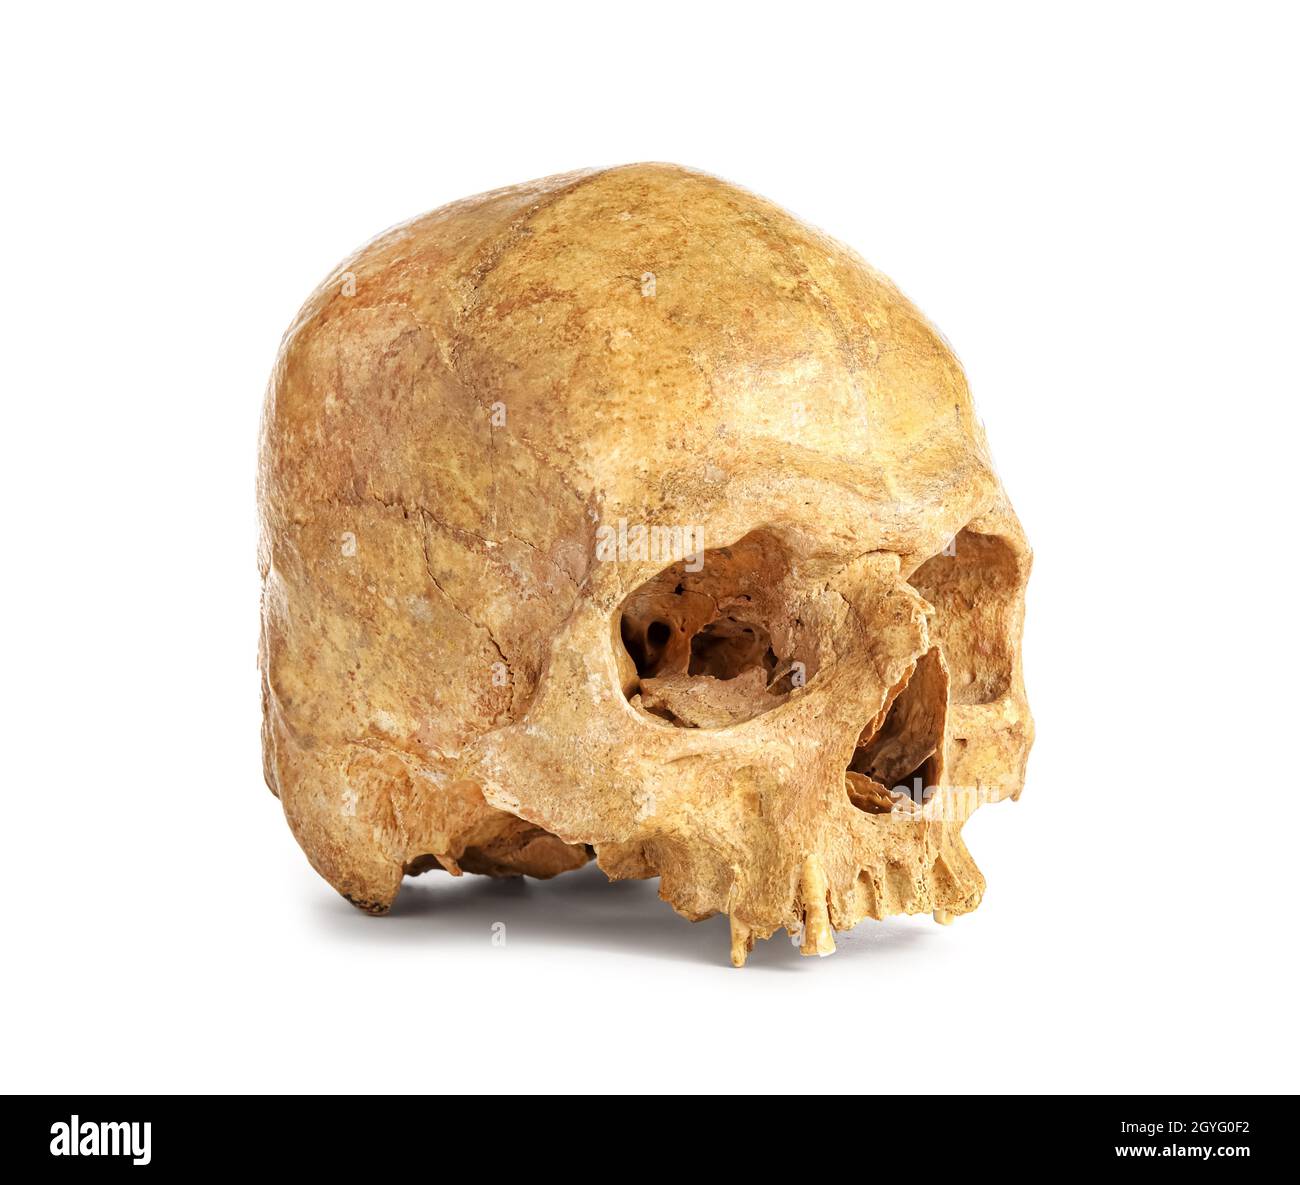 Cranio umano su sfondo bianco Foto Stock